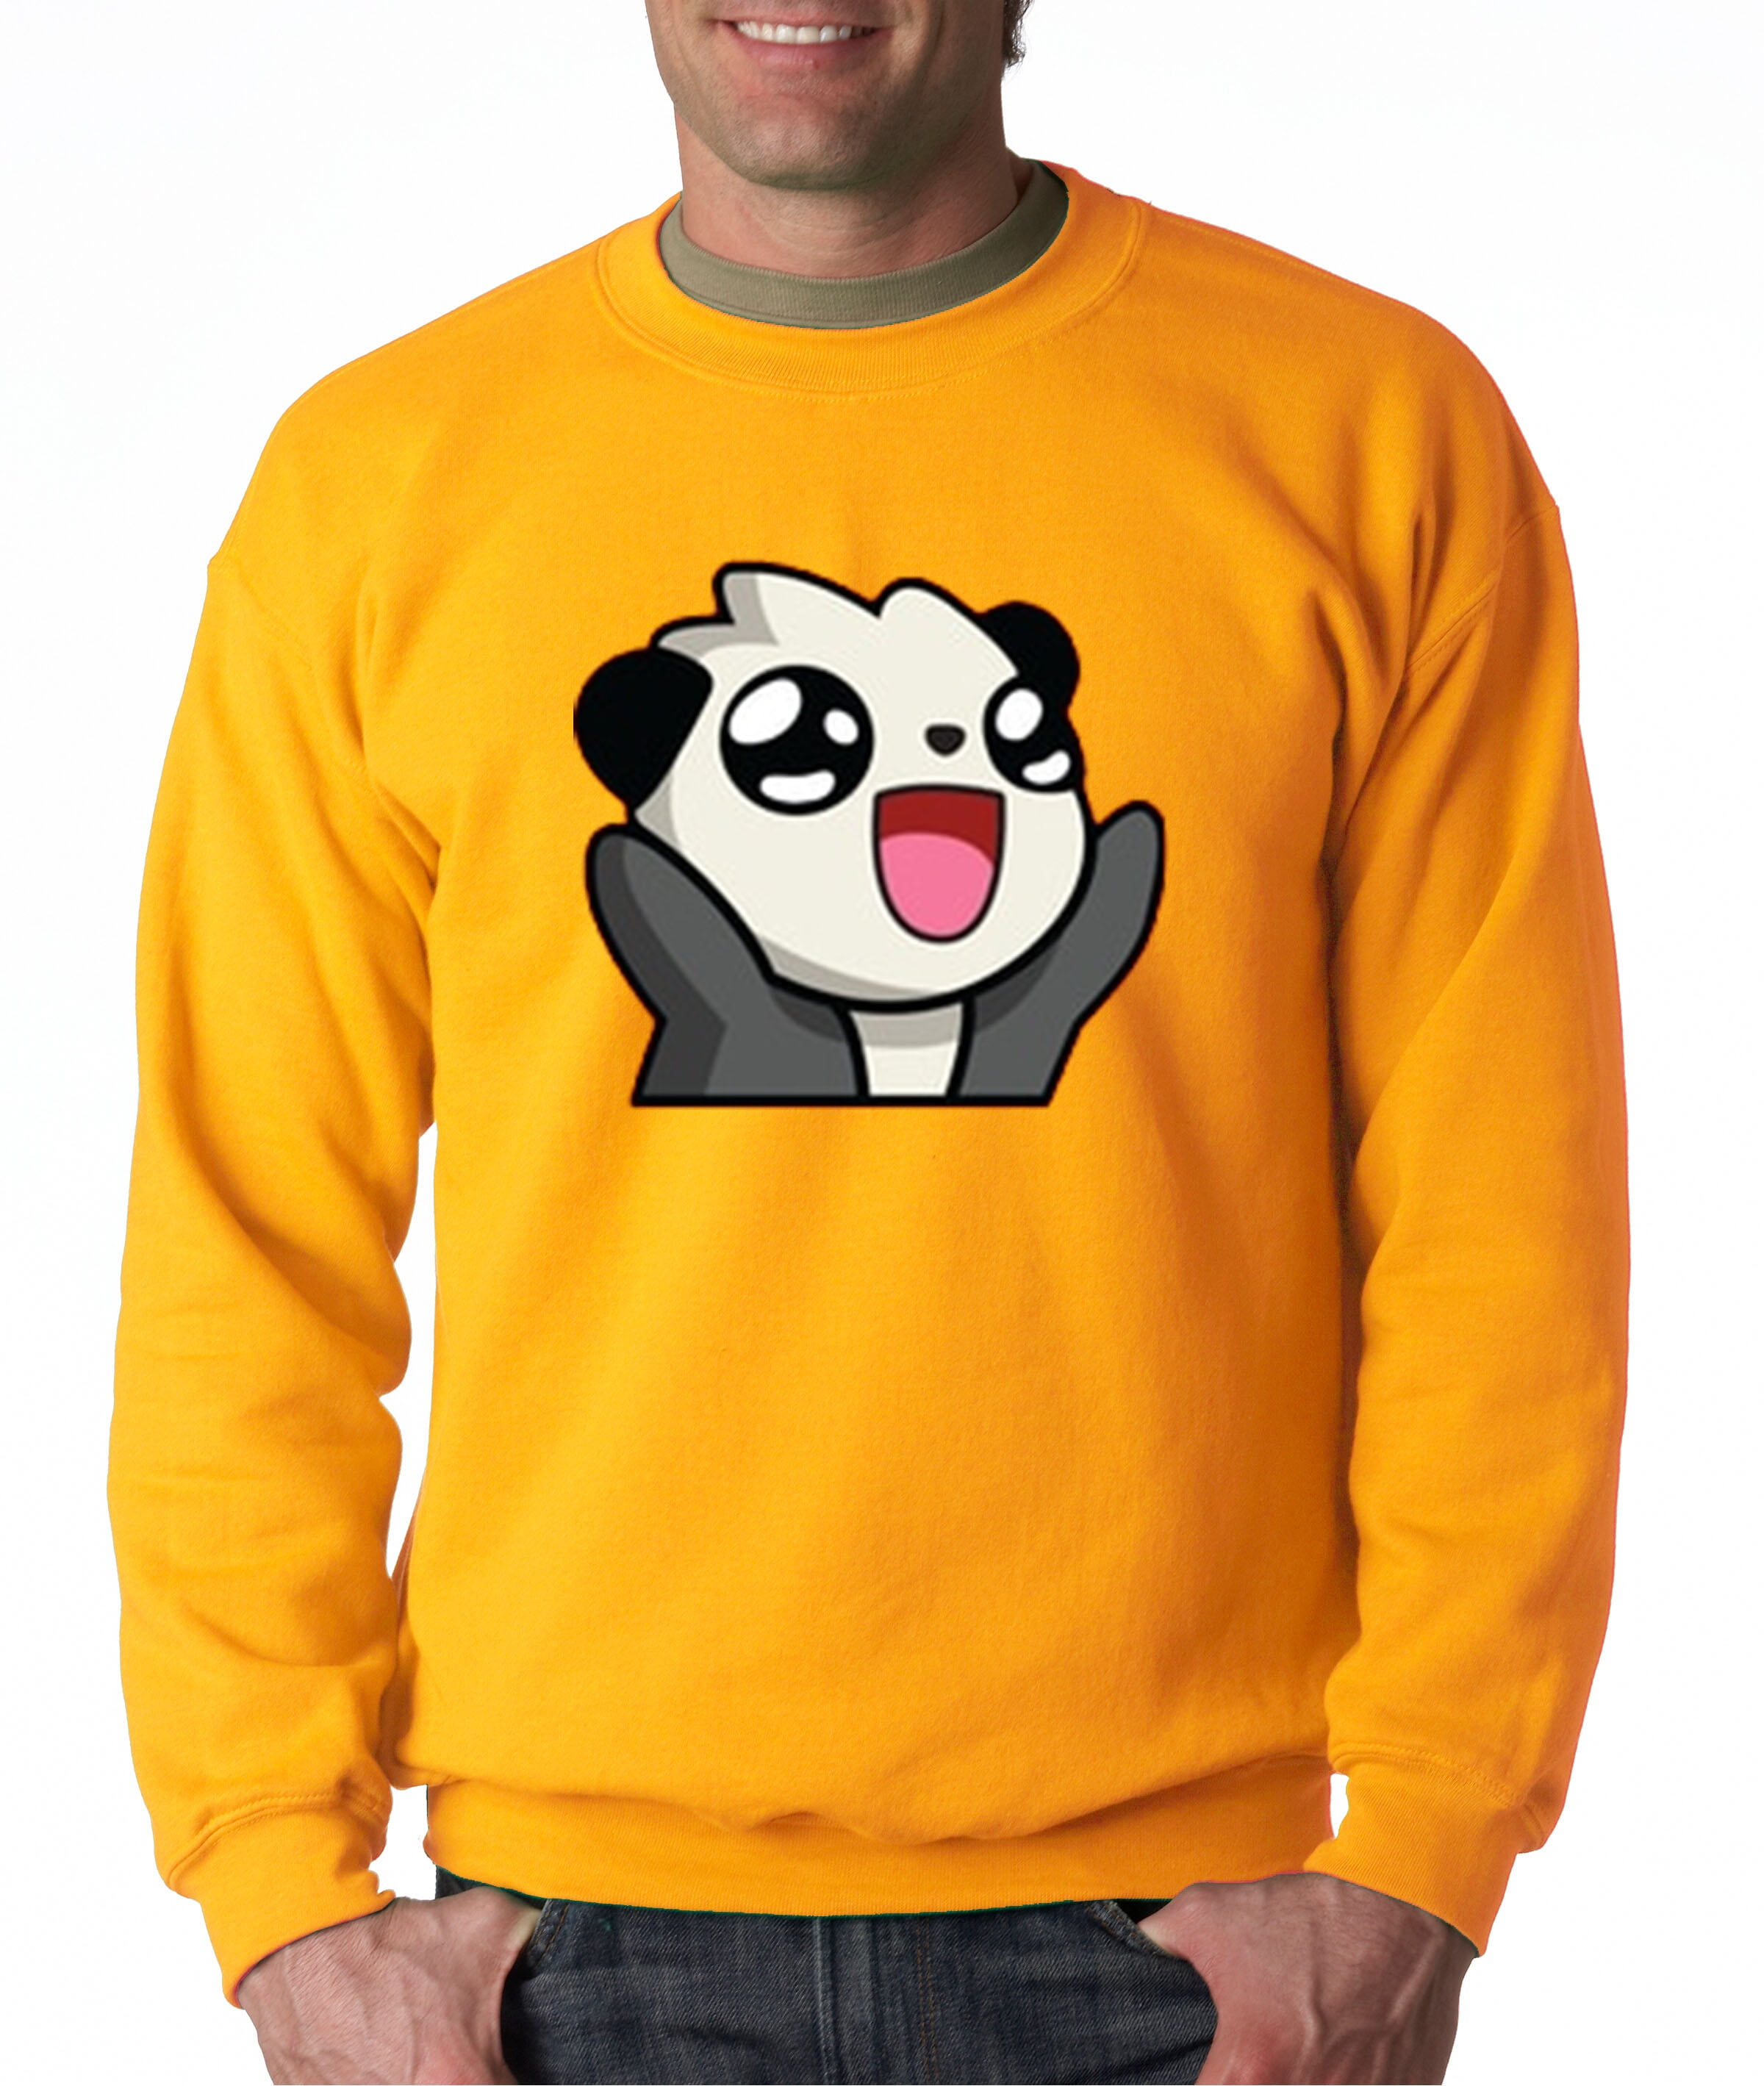 Anime crewneck sweatshirt